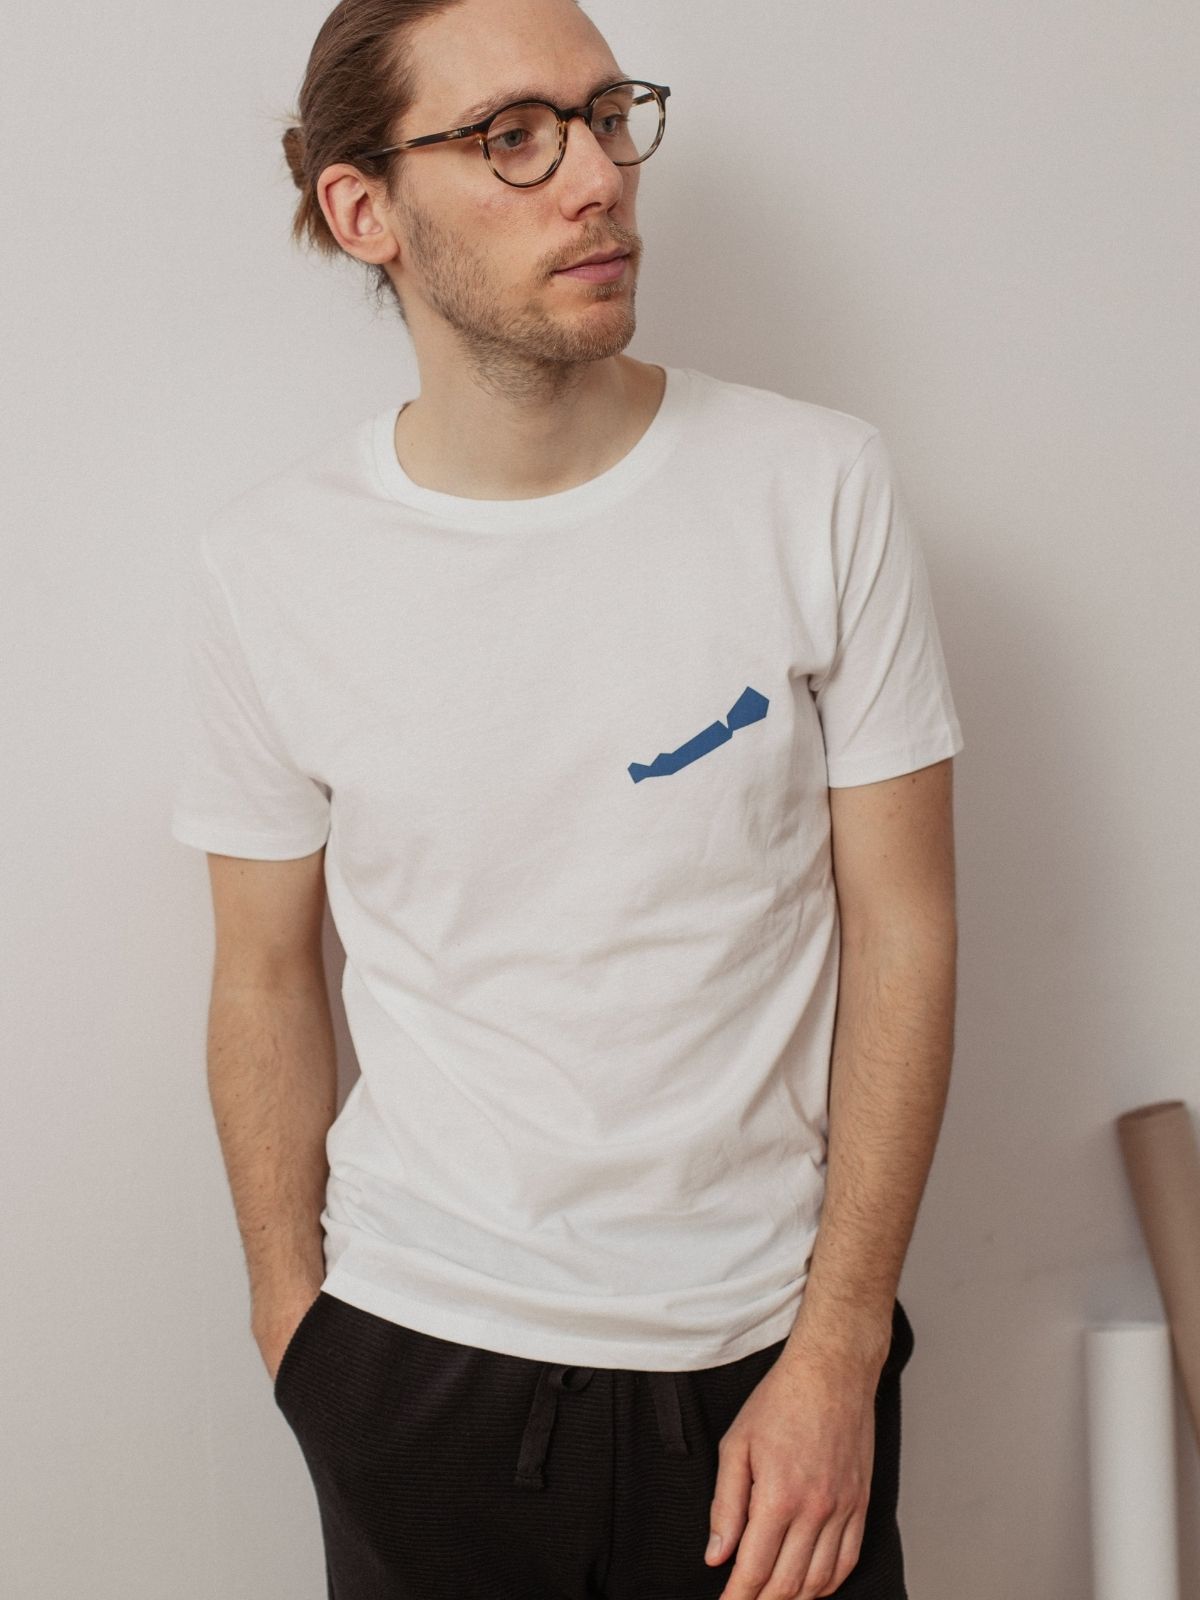 Balaton mintás fehér férfi póló